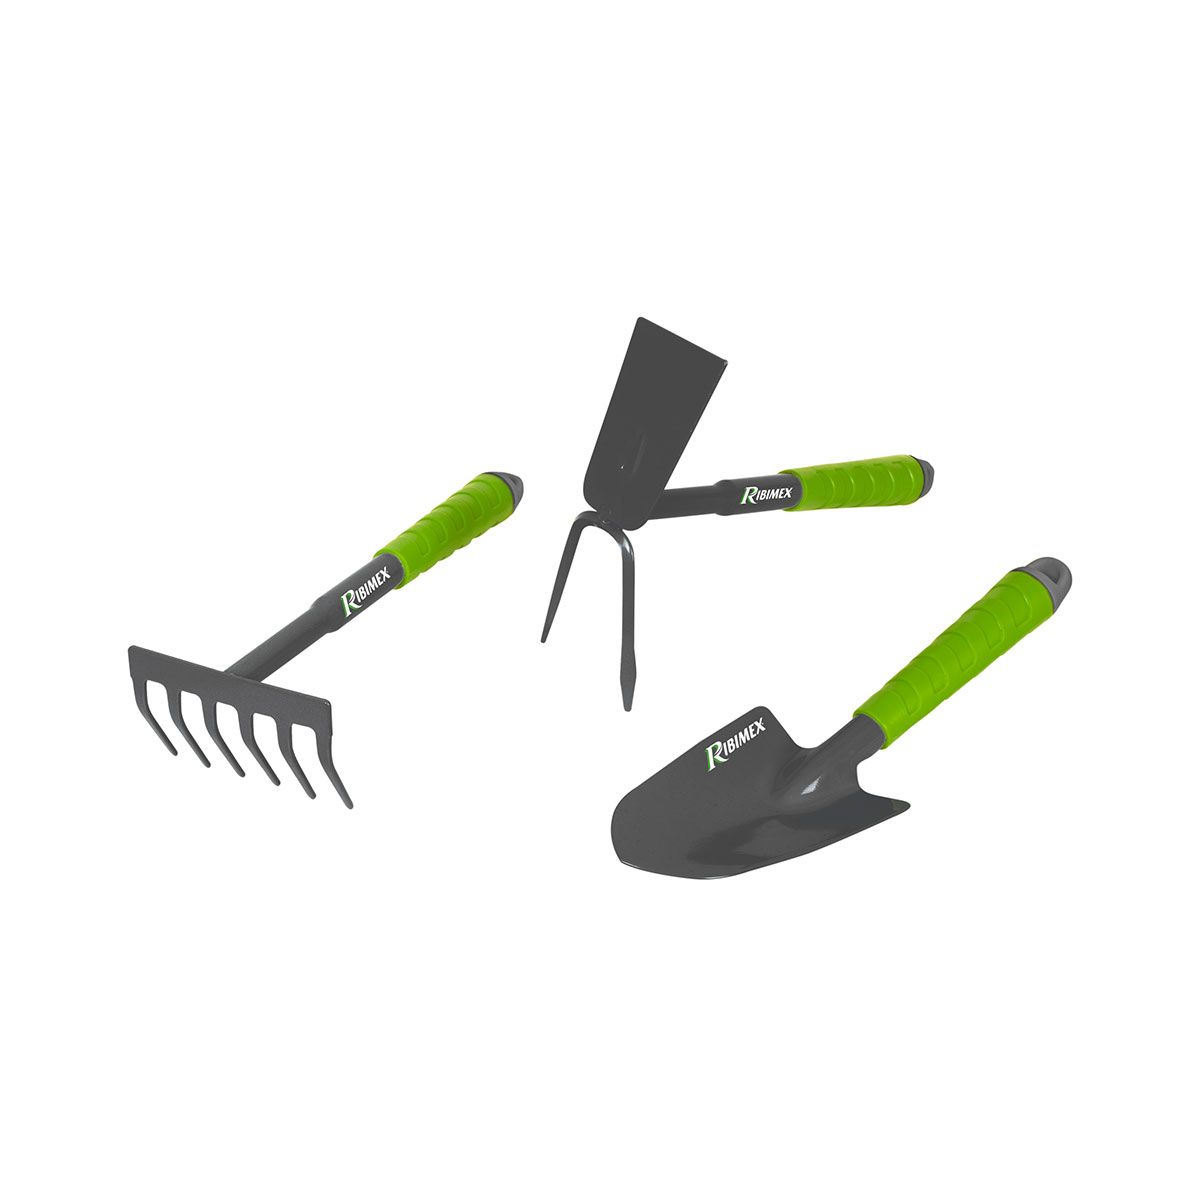 Ribimex Lot de 3 outils de jardinage en acier : râteau, serfouette, transplanteur